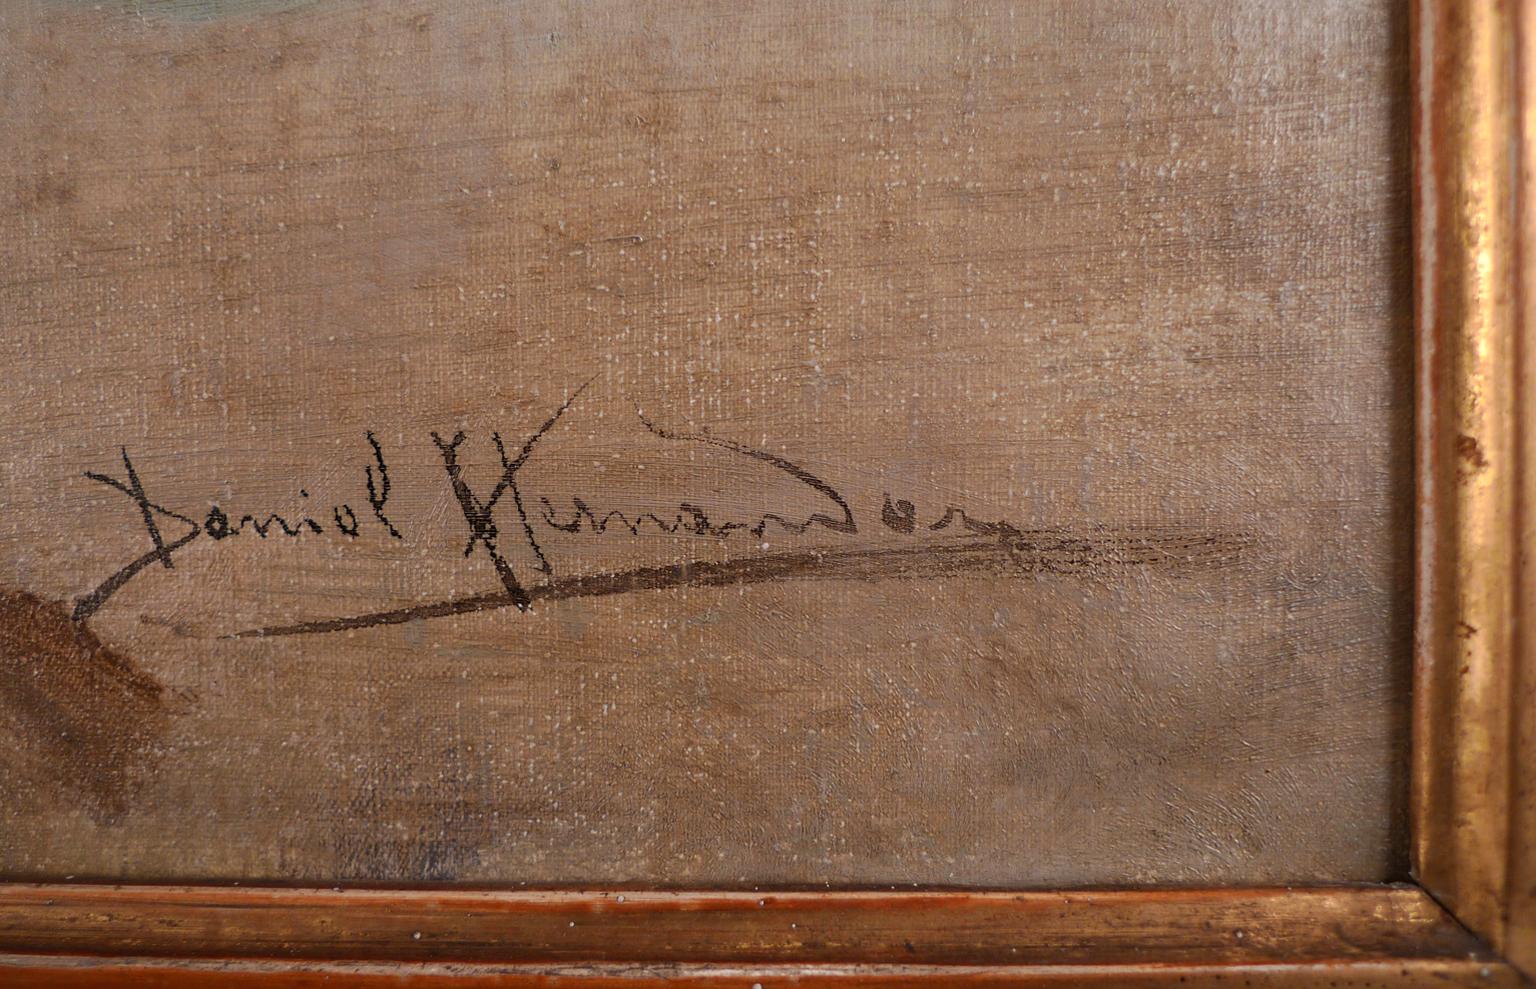 DANIEL HERNÁNDEZ
Peruanerin, 1856 - 1932
FERNE GEDANKEN
signiert 